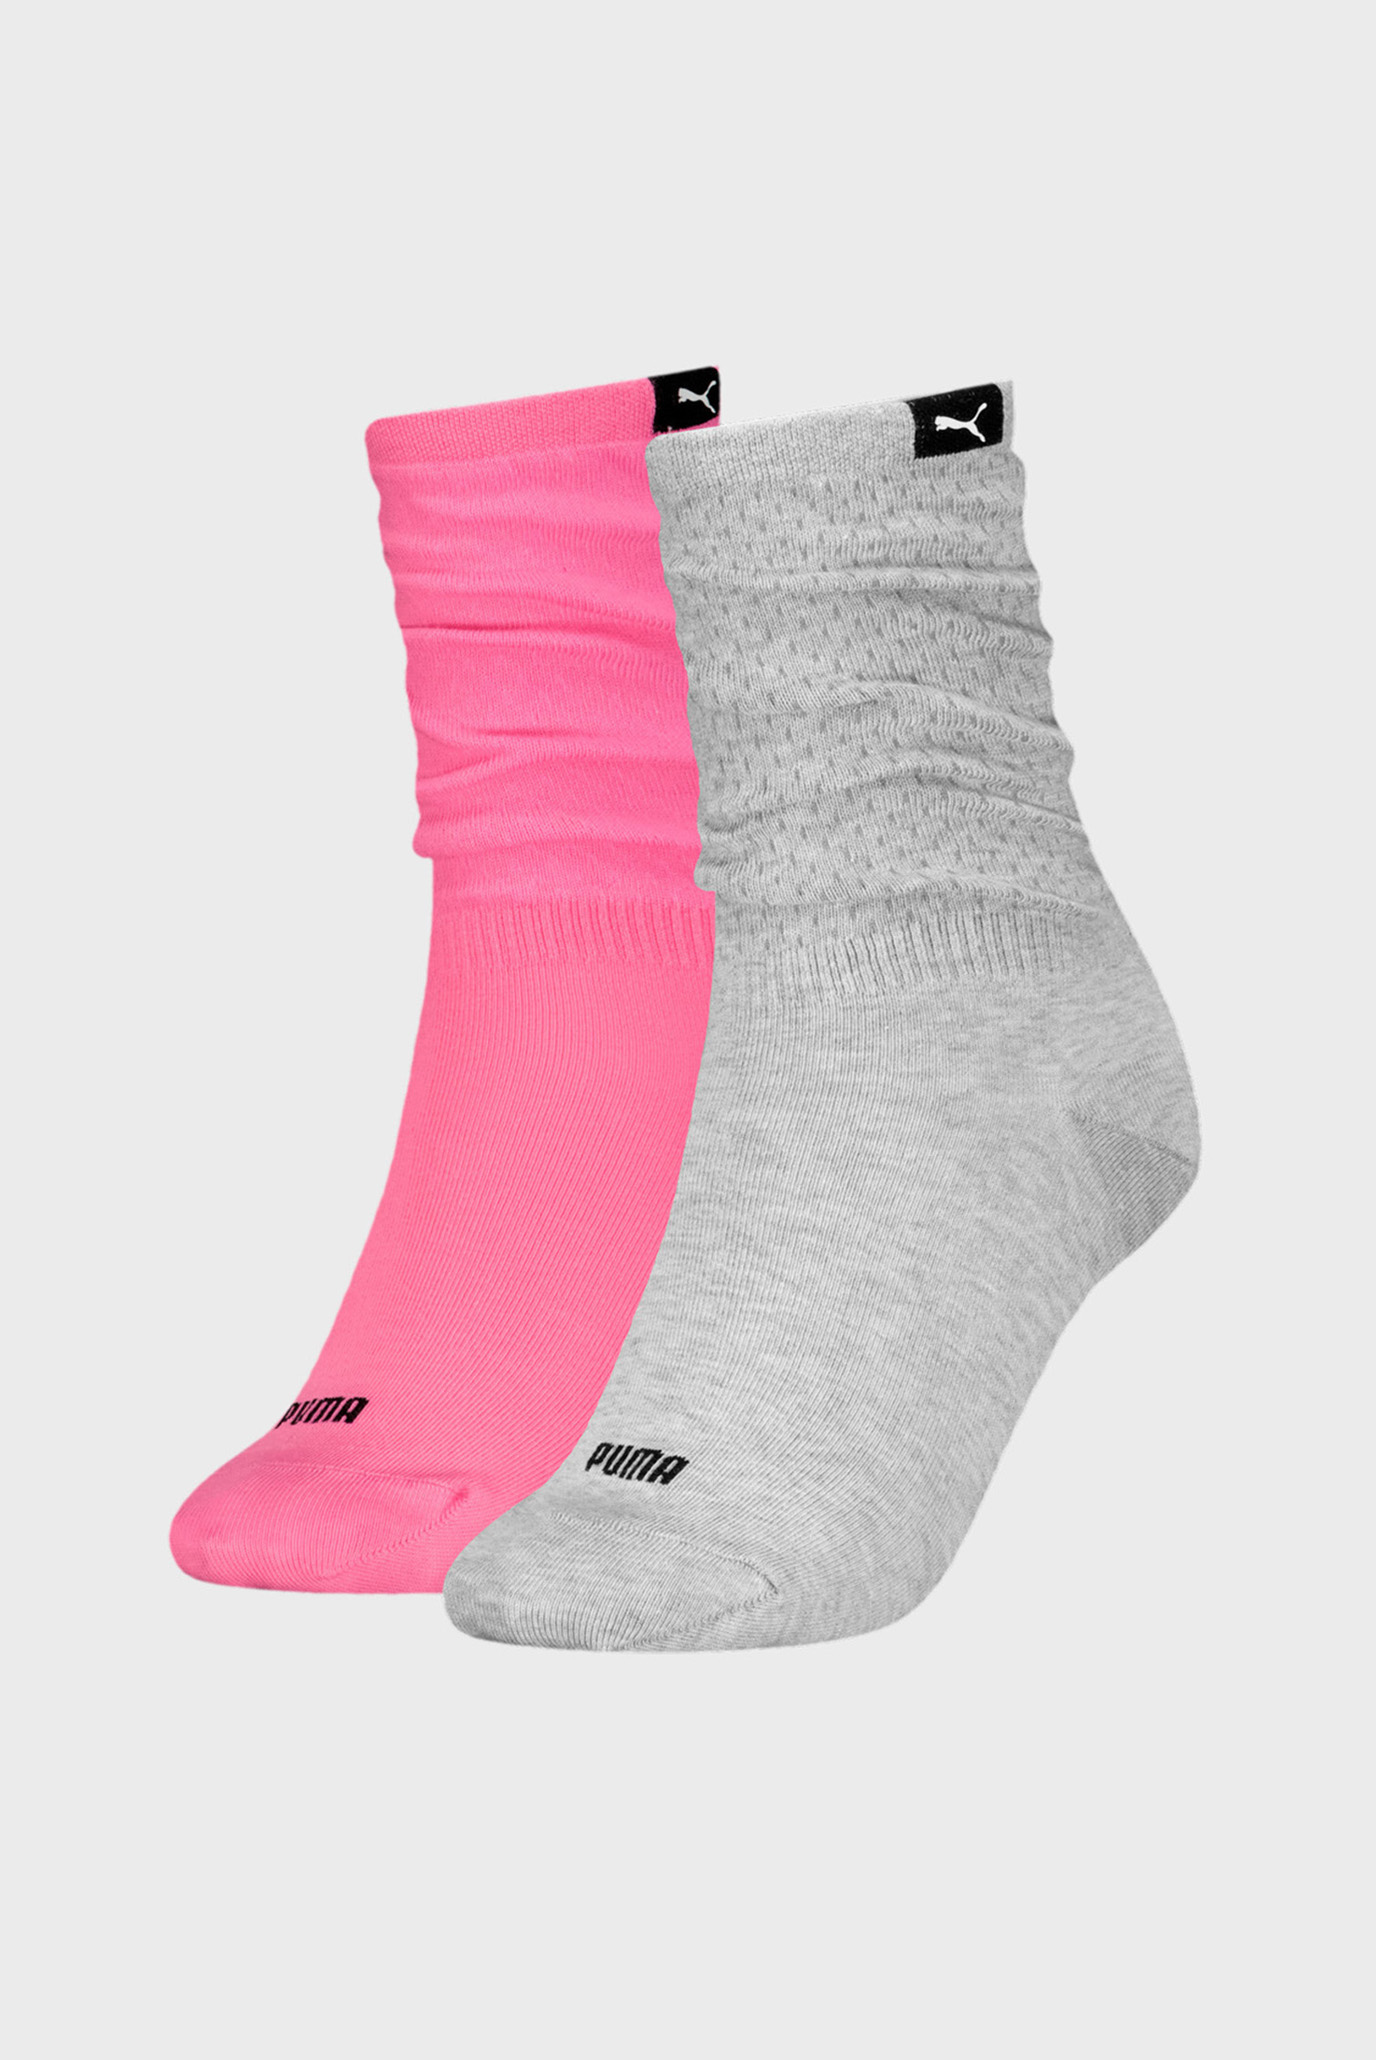 Женские носки (2 пары) PUMA Women's Classic Socks 2 Pack 1